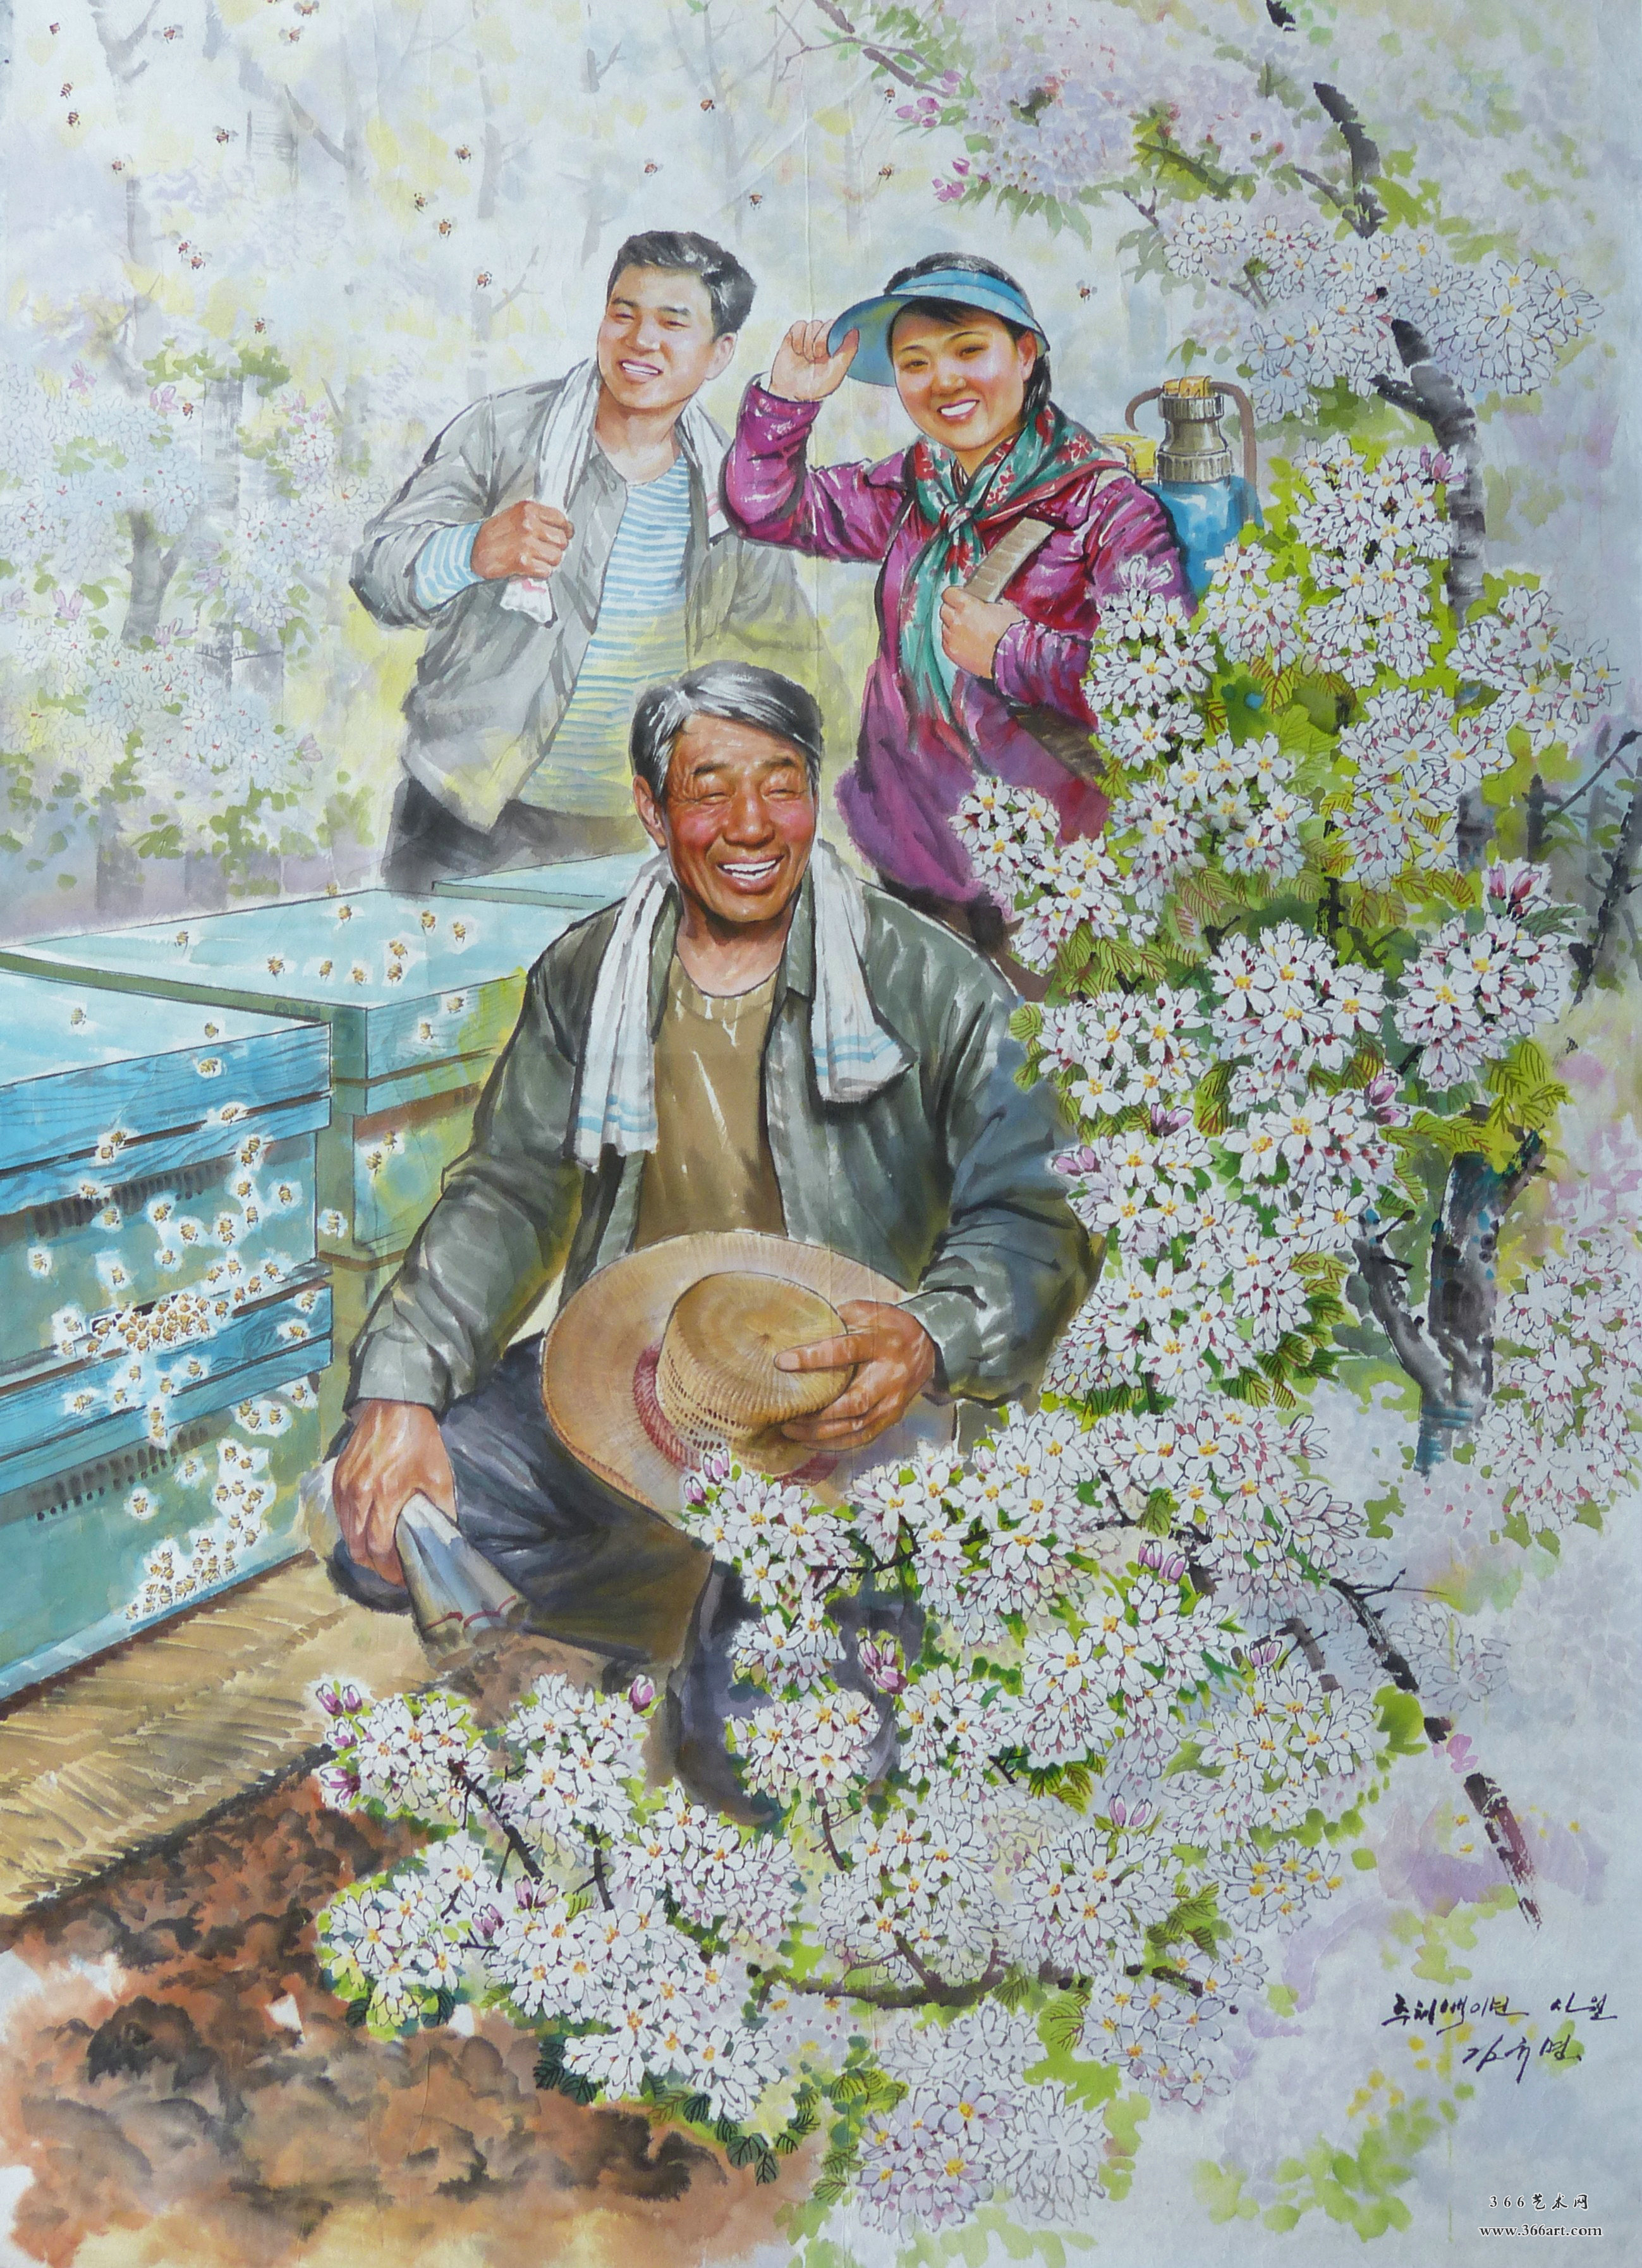 【朝鲜主体画】金奎明 养蜂者 2013年4月 120 x 168cm